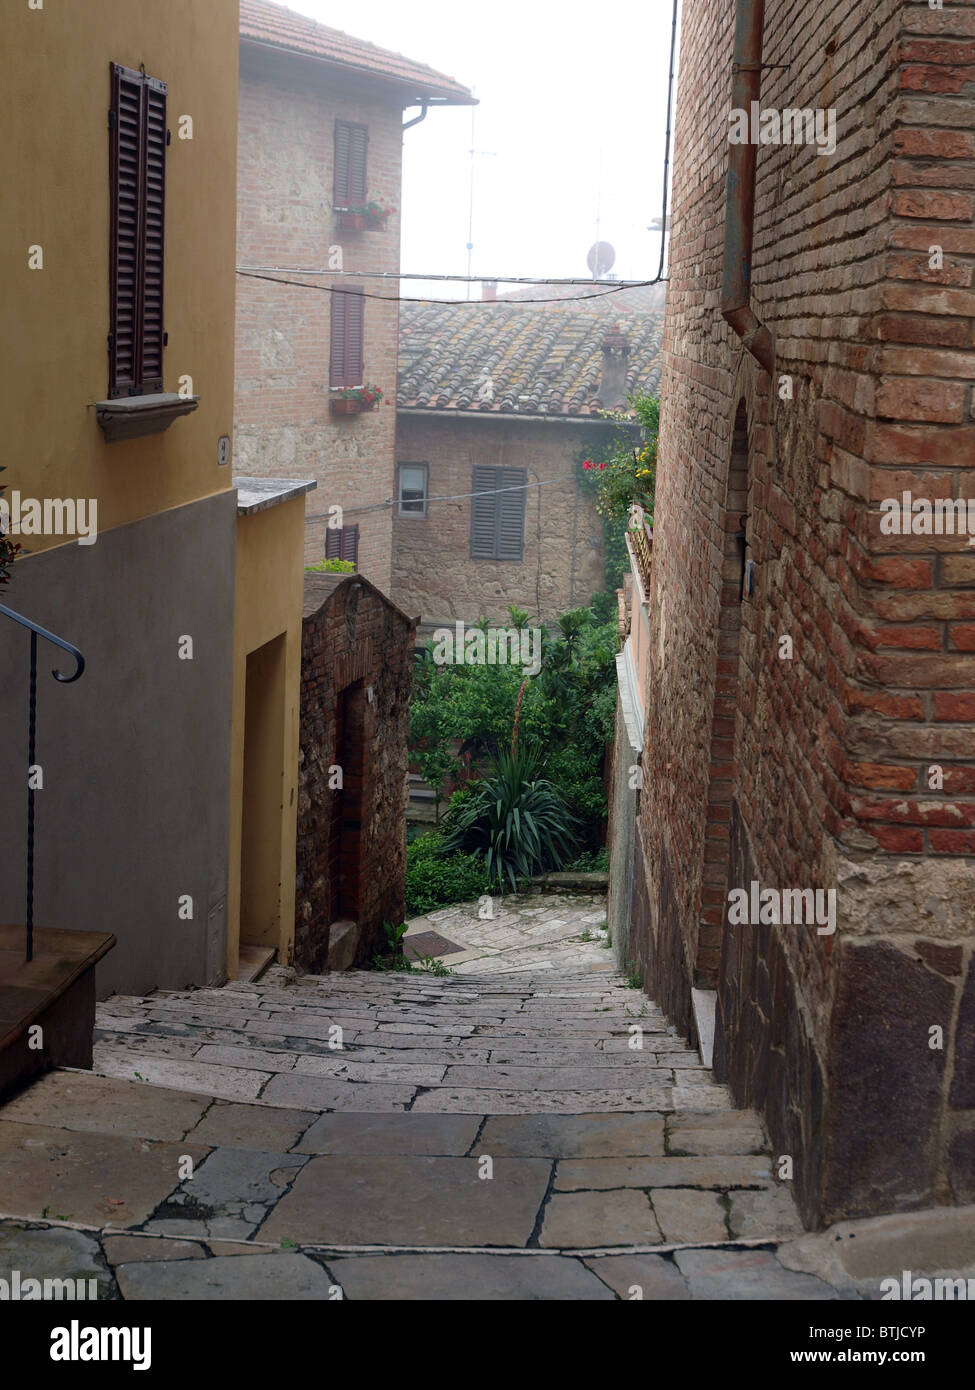 Morgen in der toskanischen Stadt. Chiusi - eines der ältesten etruskischen Städte in Toskana, Italien Stockfoto